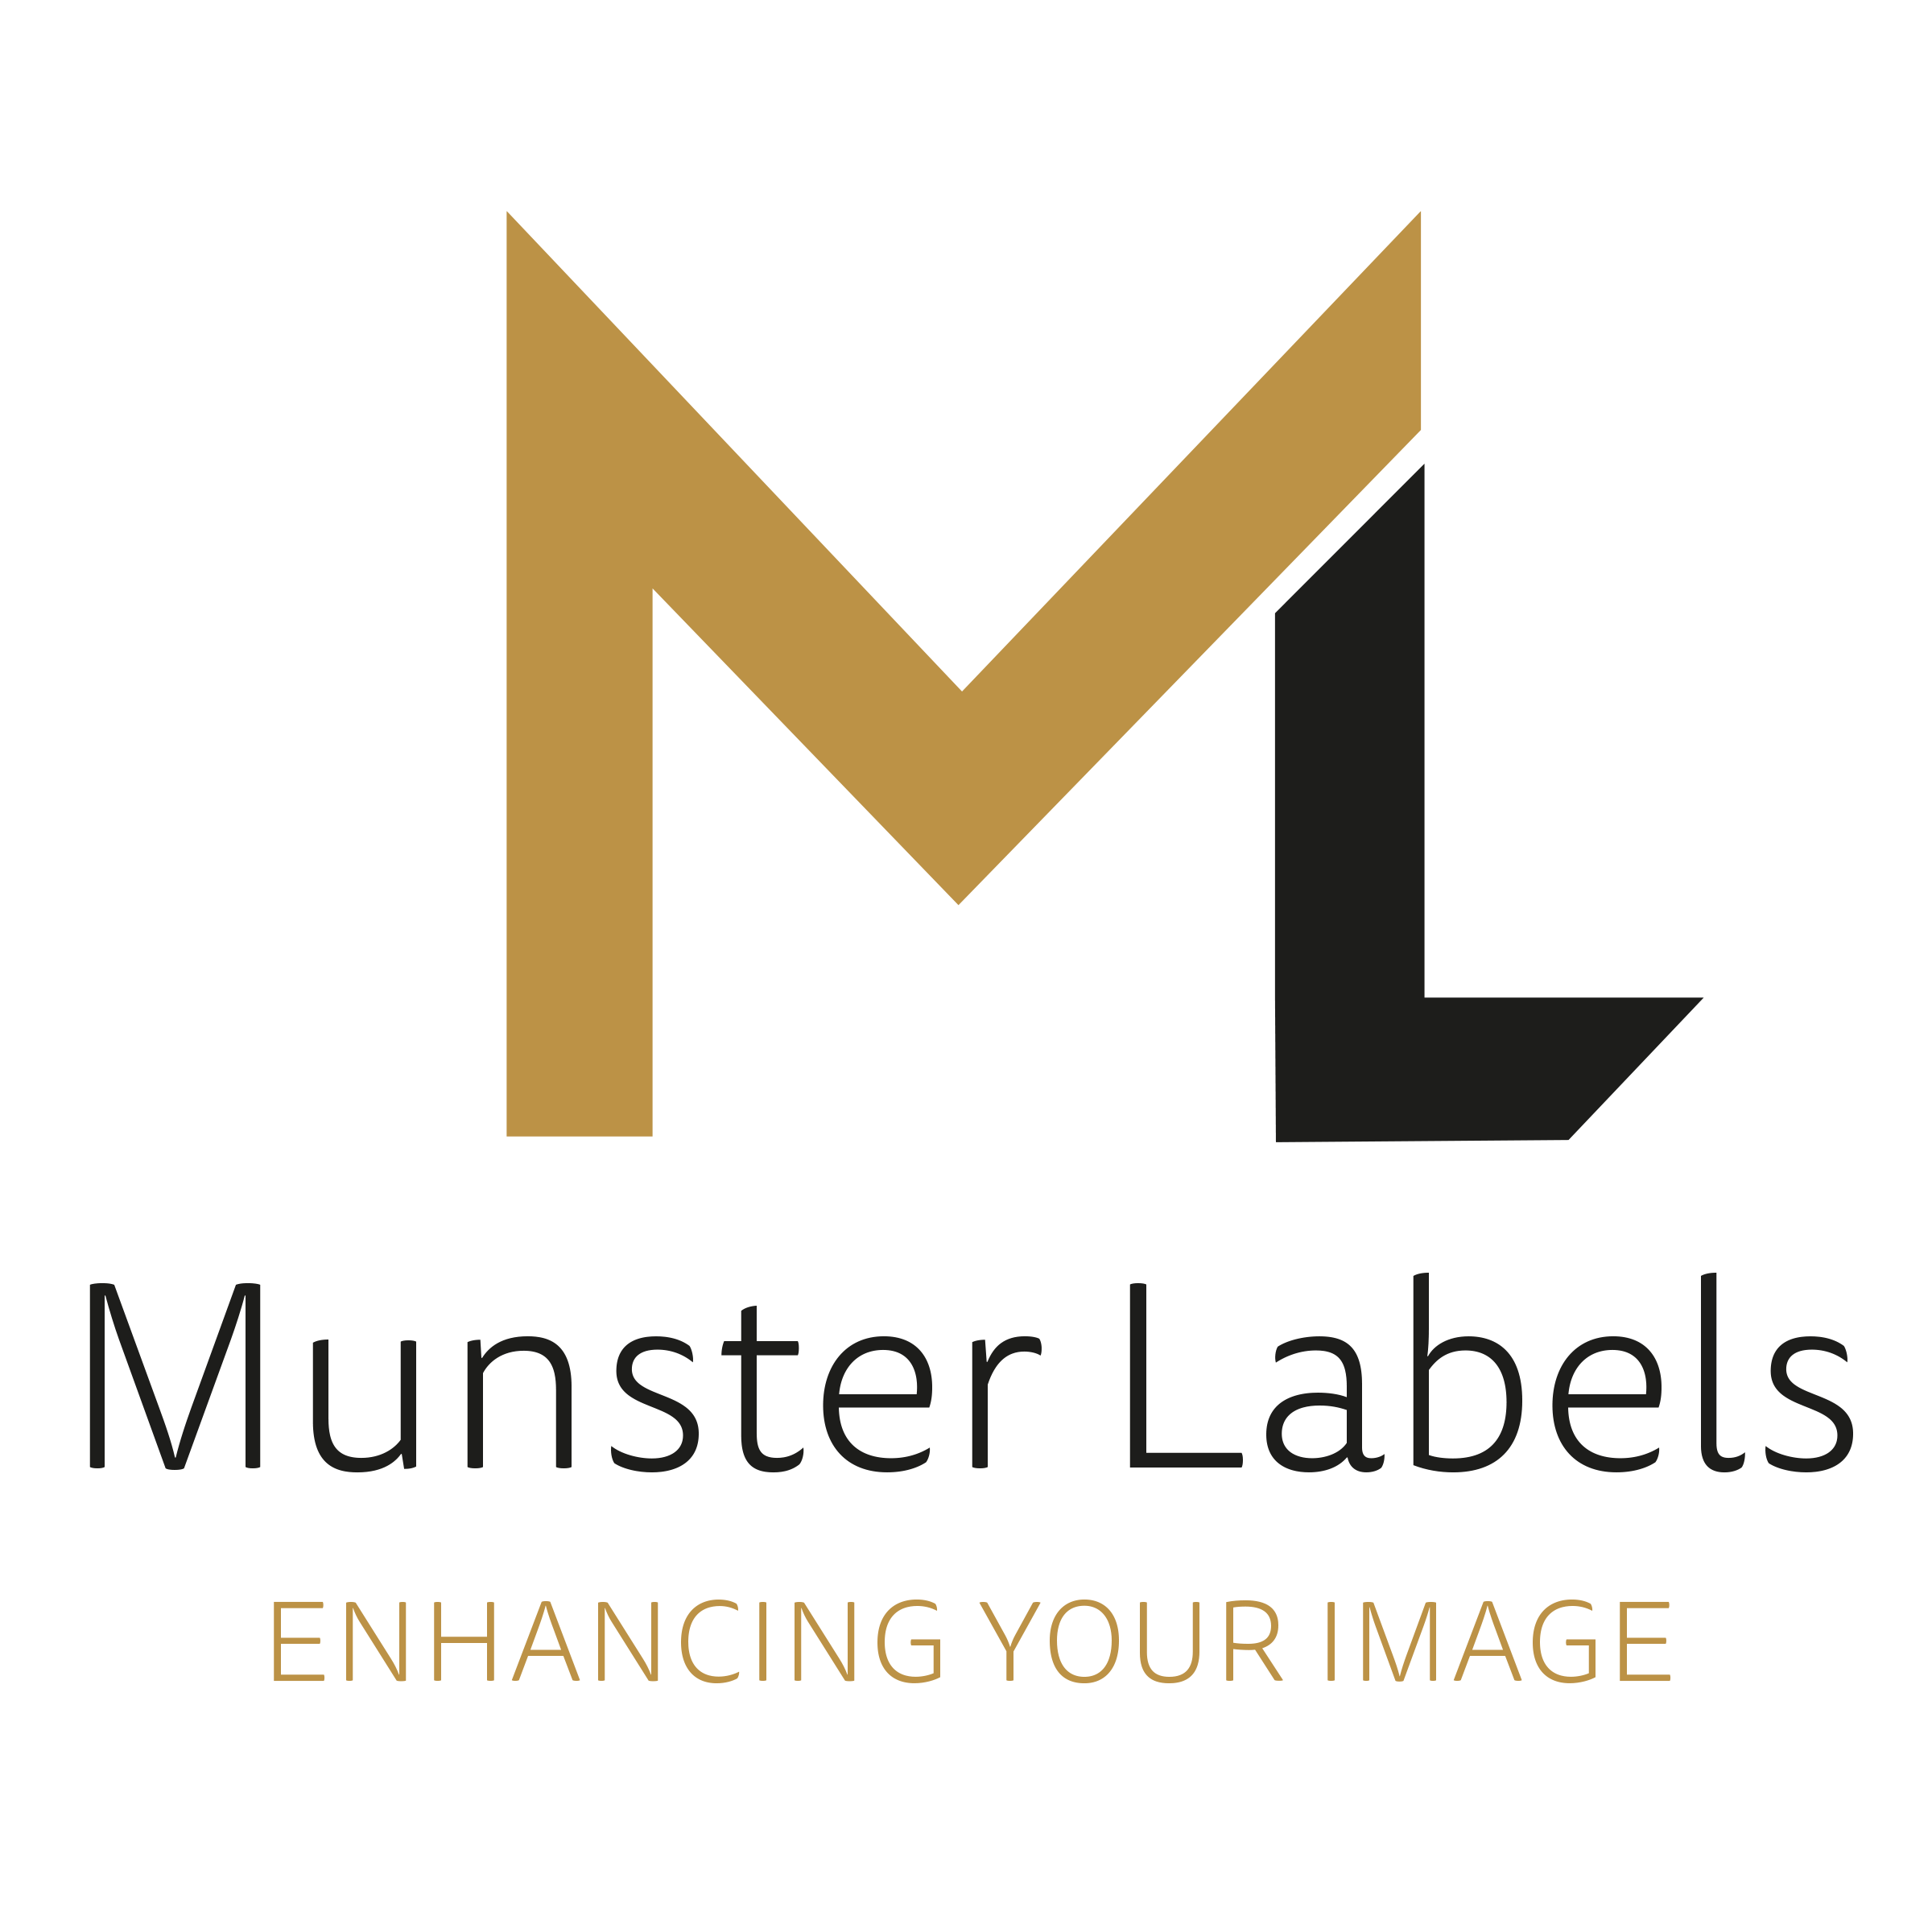 Munster Labels